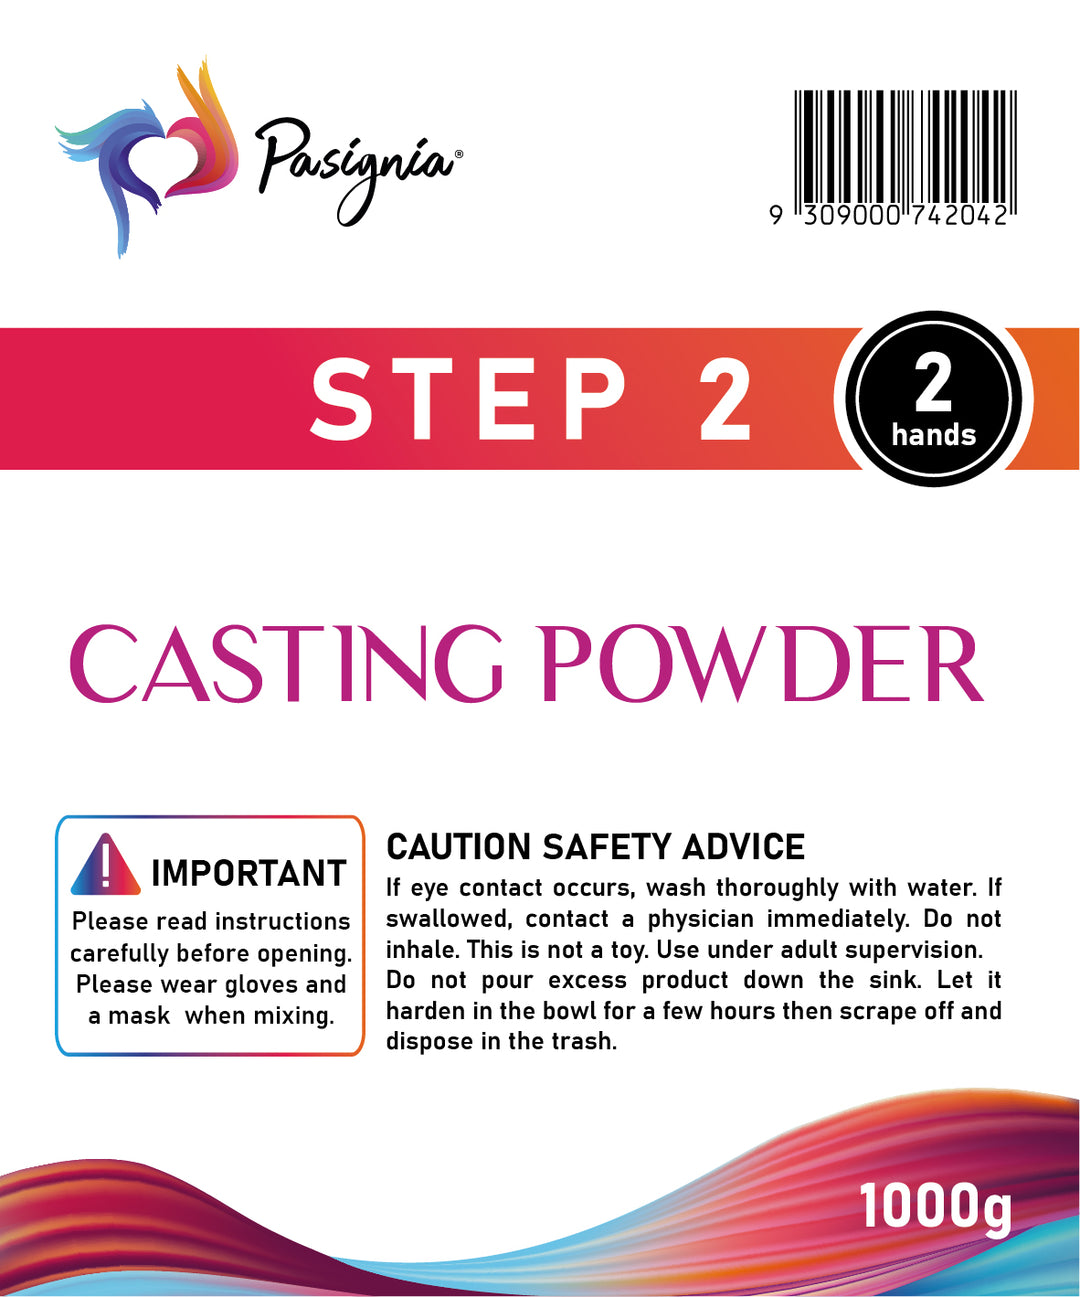 Casting Powder (2 hands)